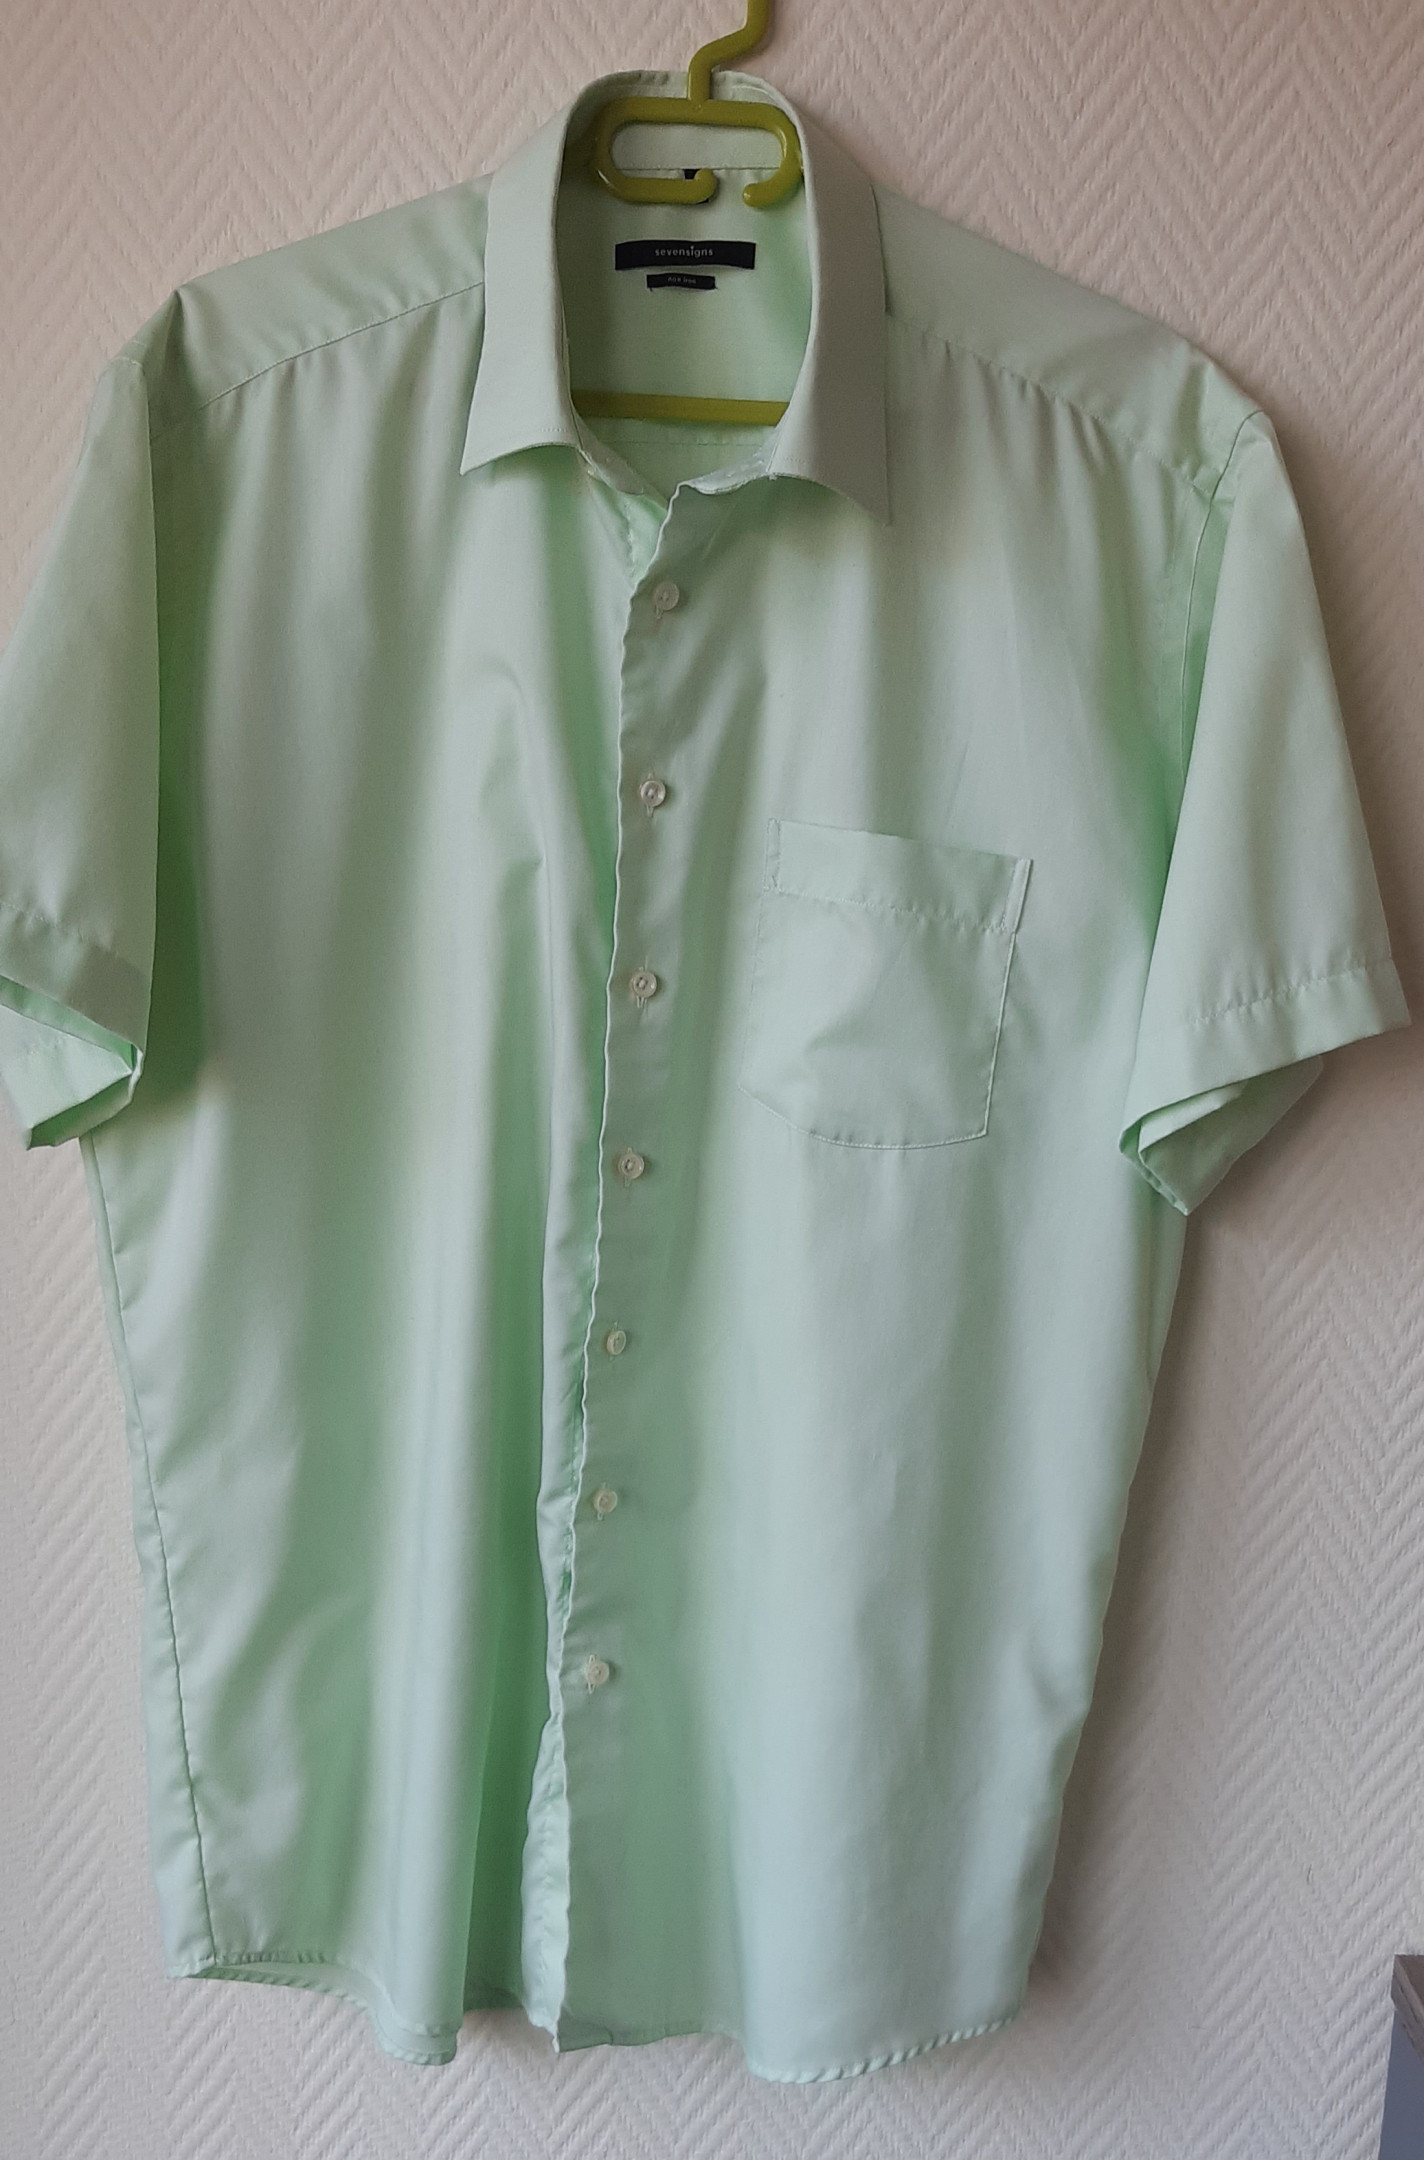 Pistachio green short sleeve shirt